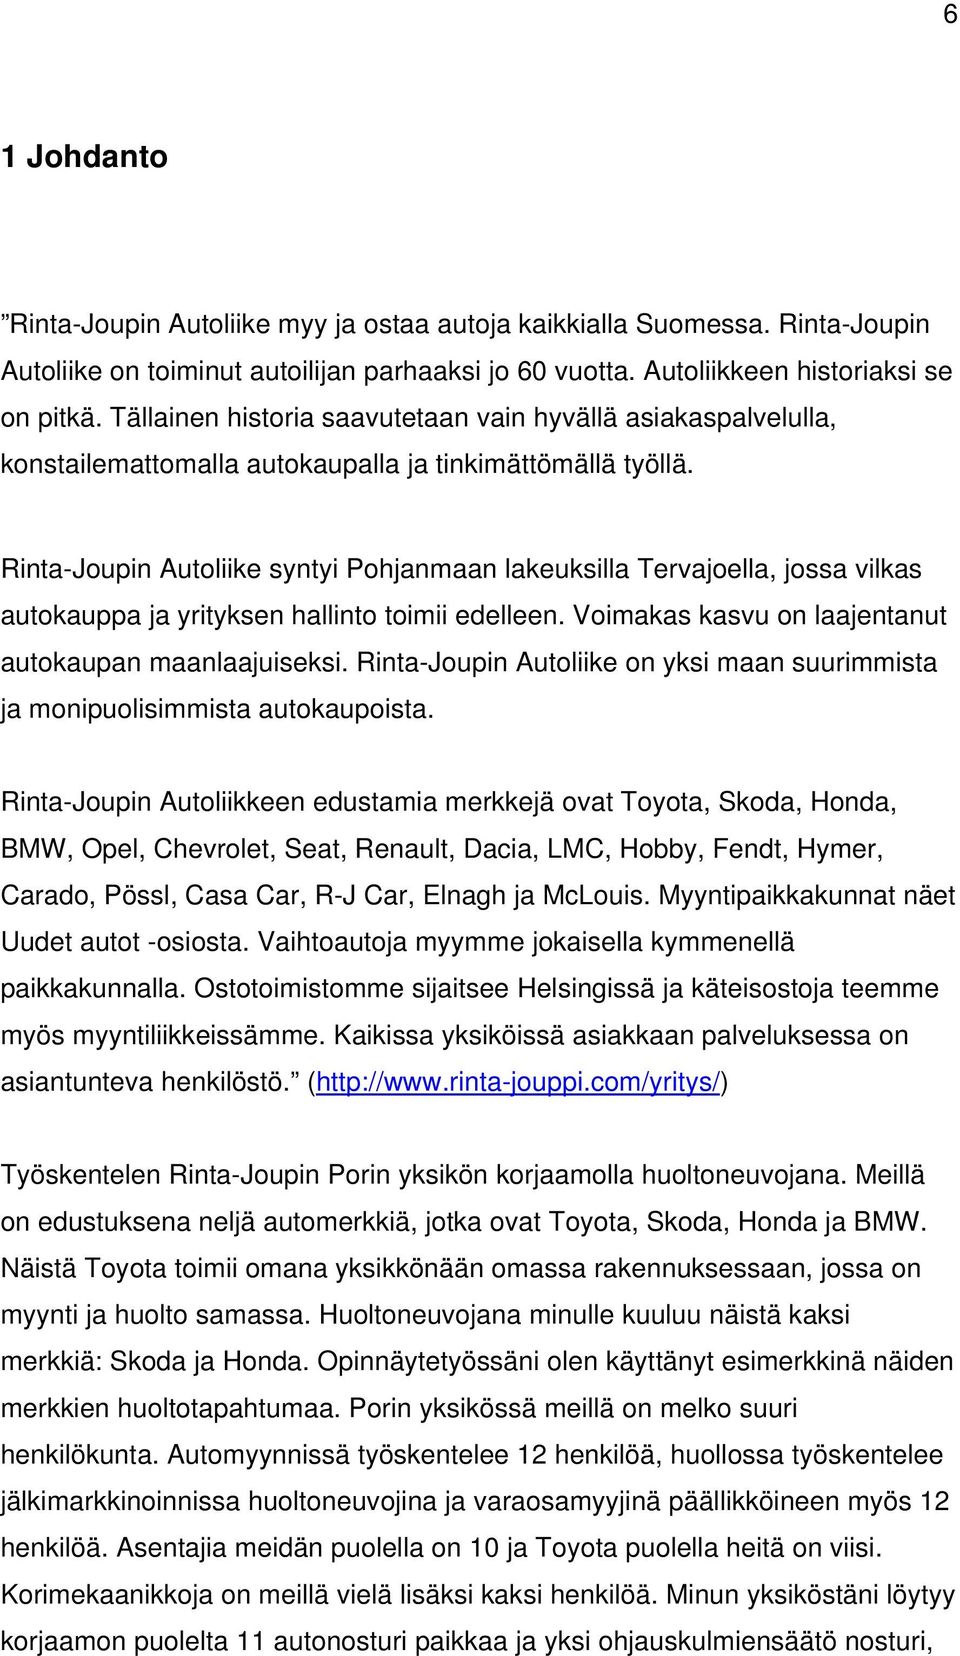 Rinta-Joupin Autoliike syntyi Pohjanmaan lakeuksilla Tervajoella, jossa vilkas autokauppa ja yrityksen hallinto toimii edelleen. Voimakas kasvu on laajentanut autokaupan maanlaajuiseksi.